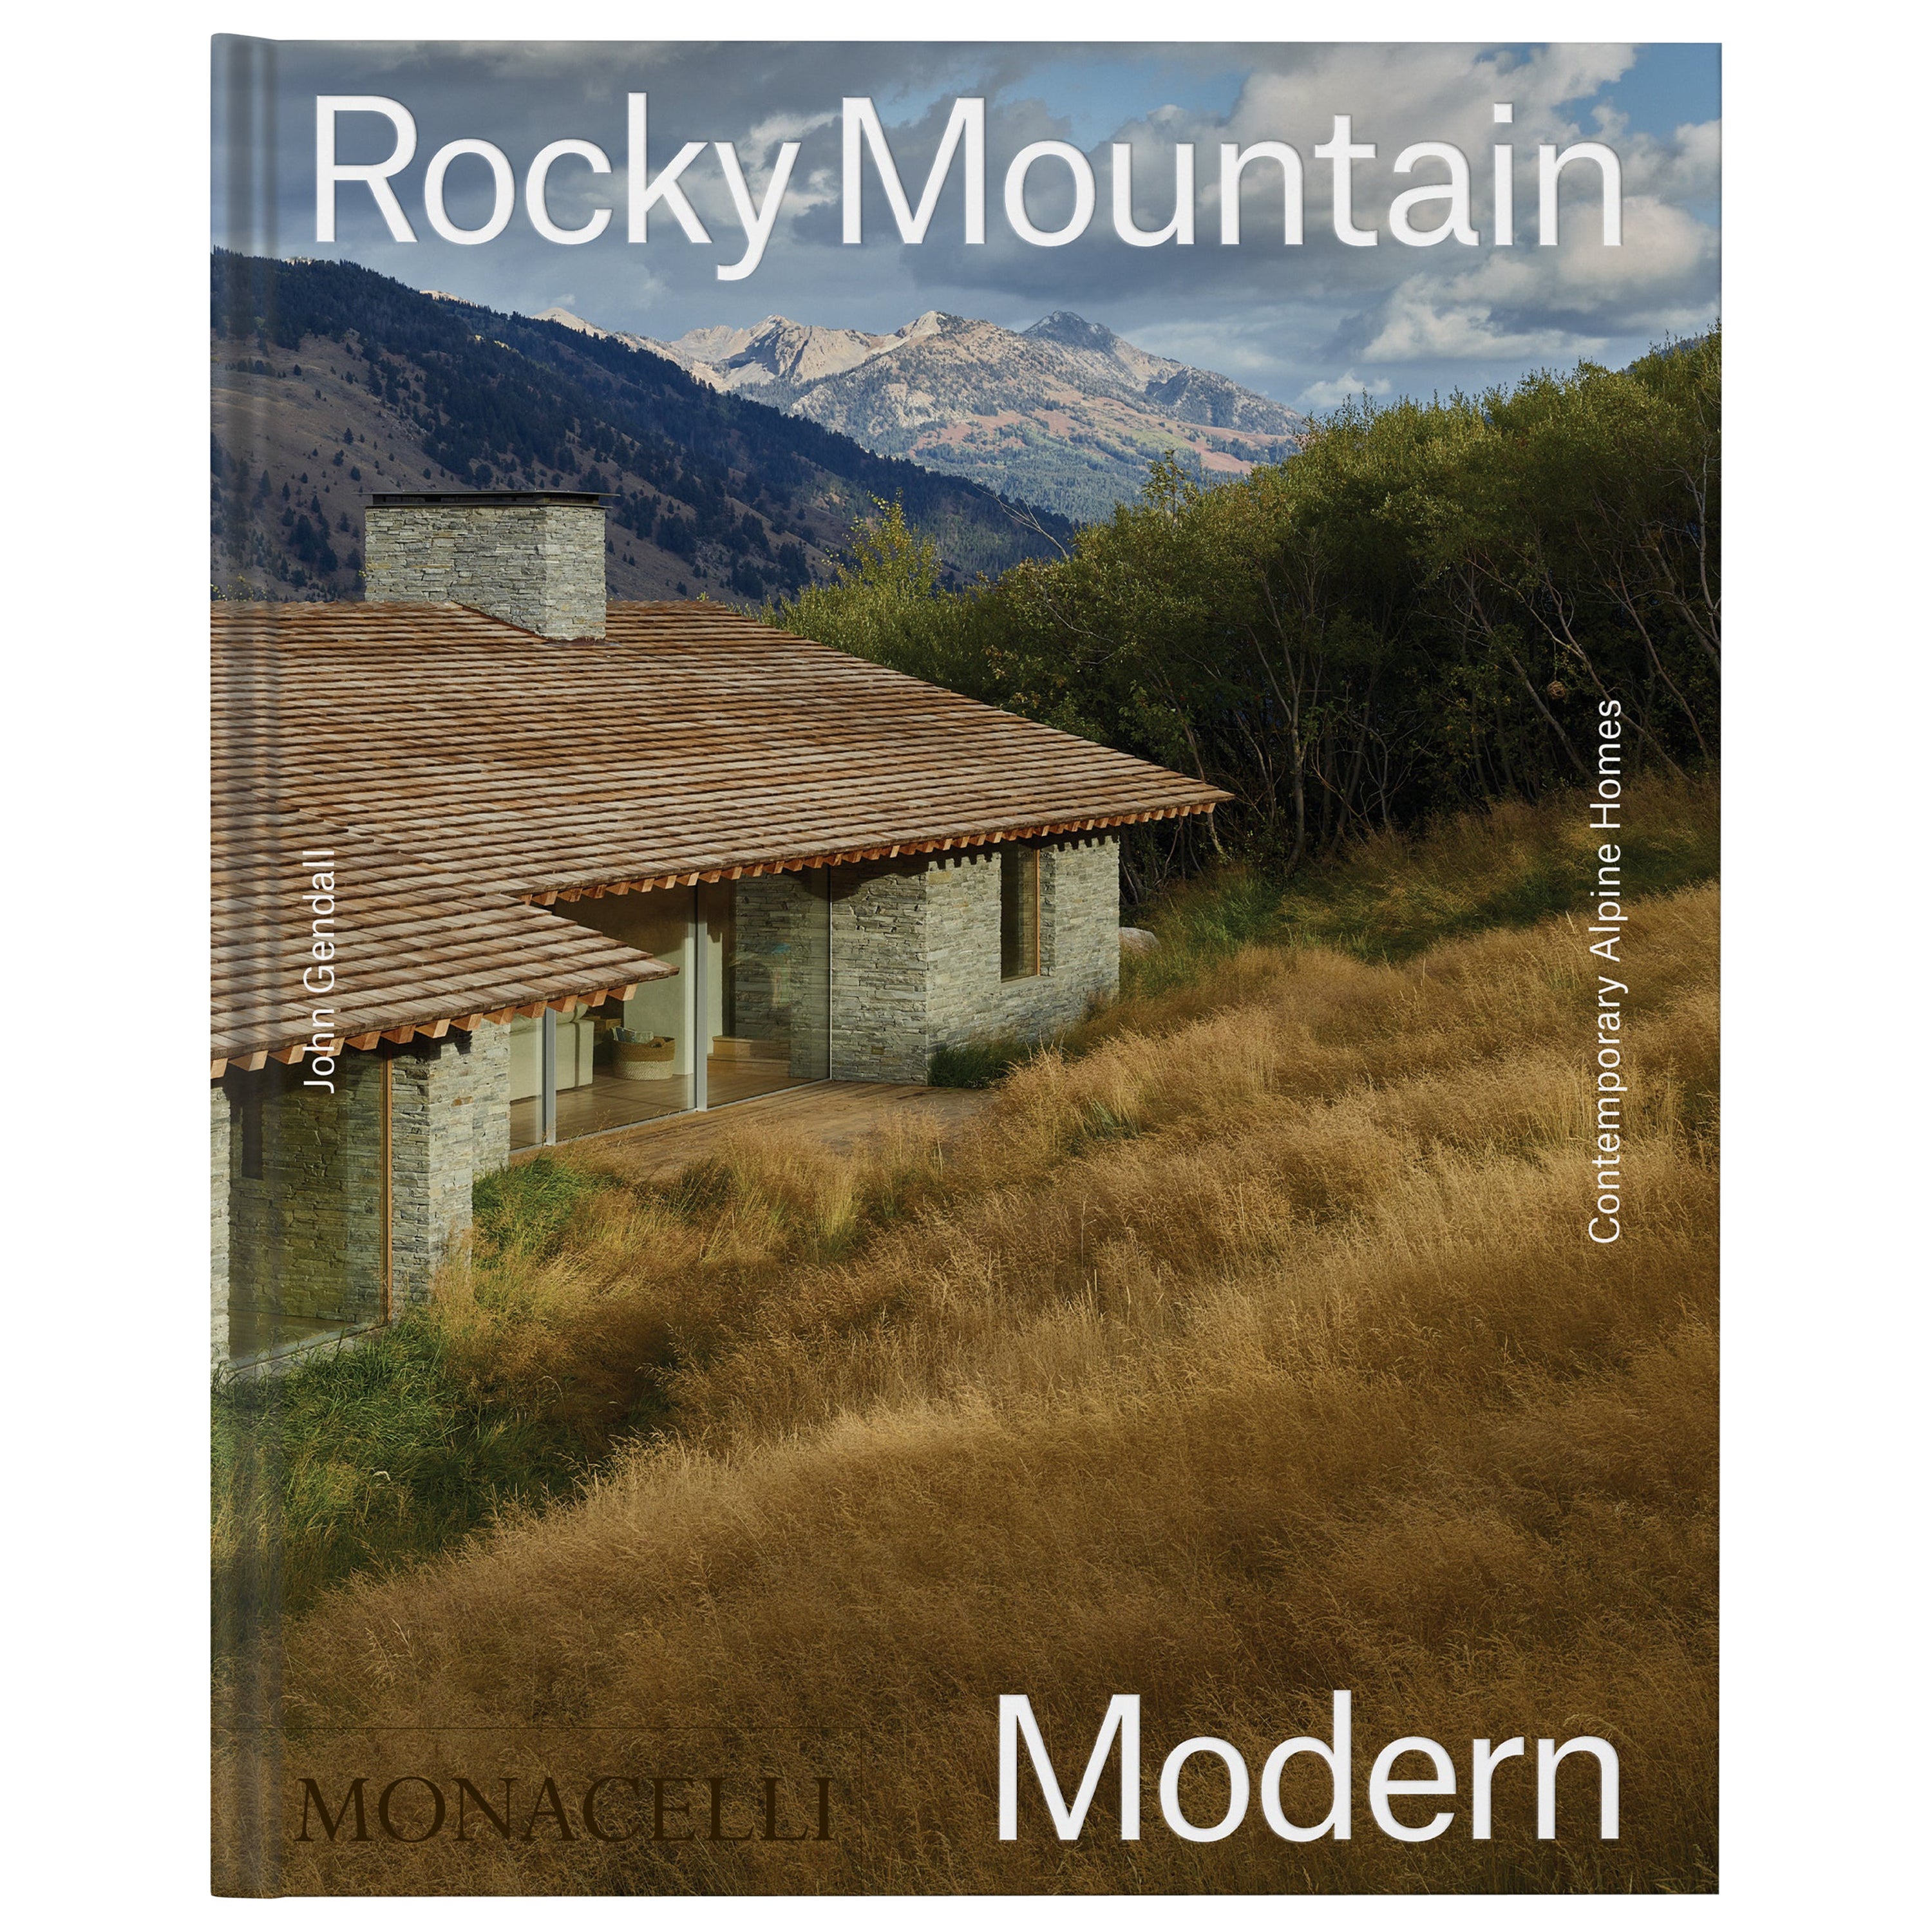 Montagnes rocheuses modernes : maisons alpines contemporaines